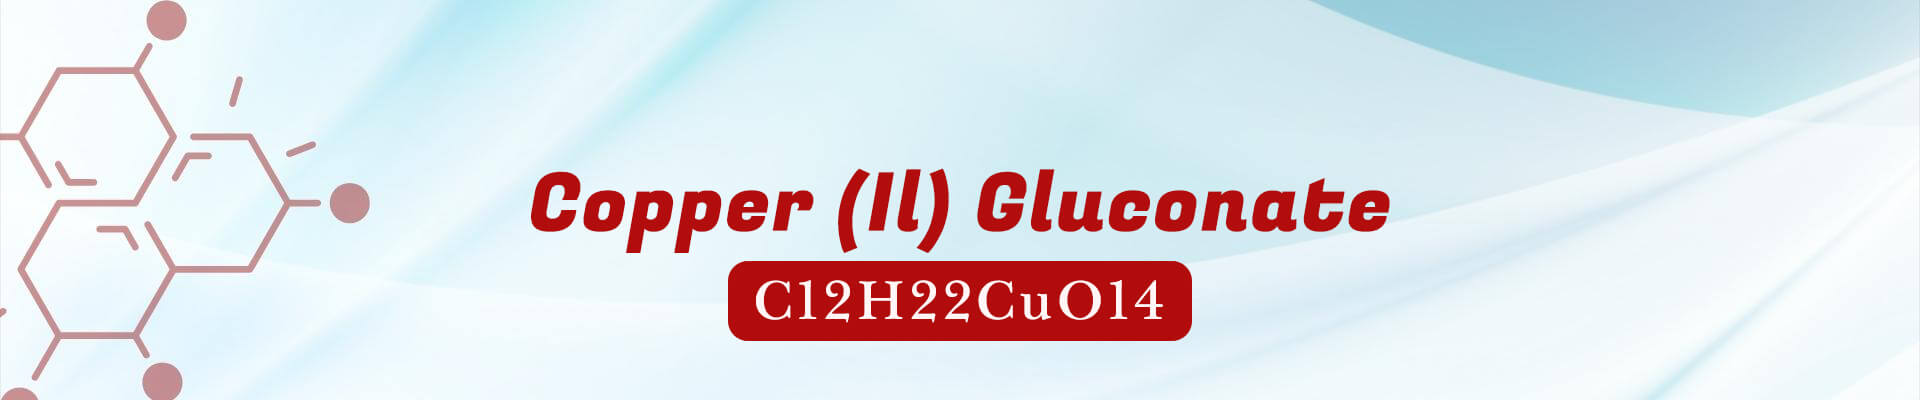 Copper (II) Gluconate